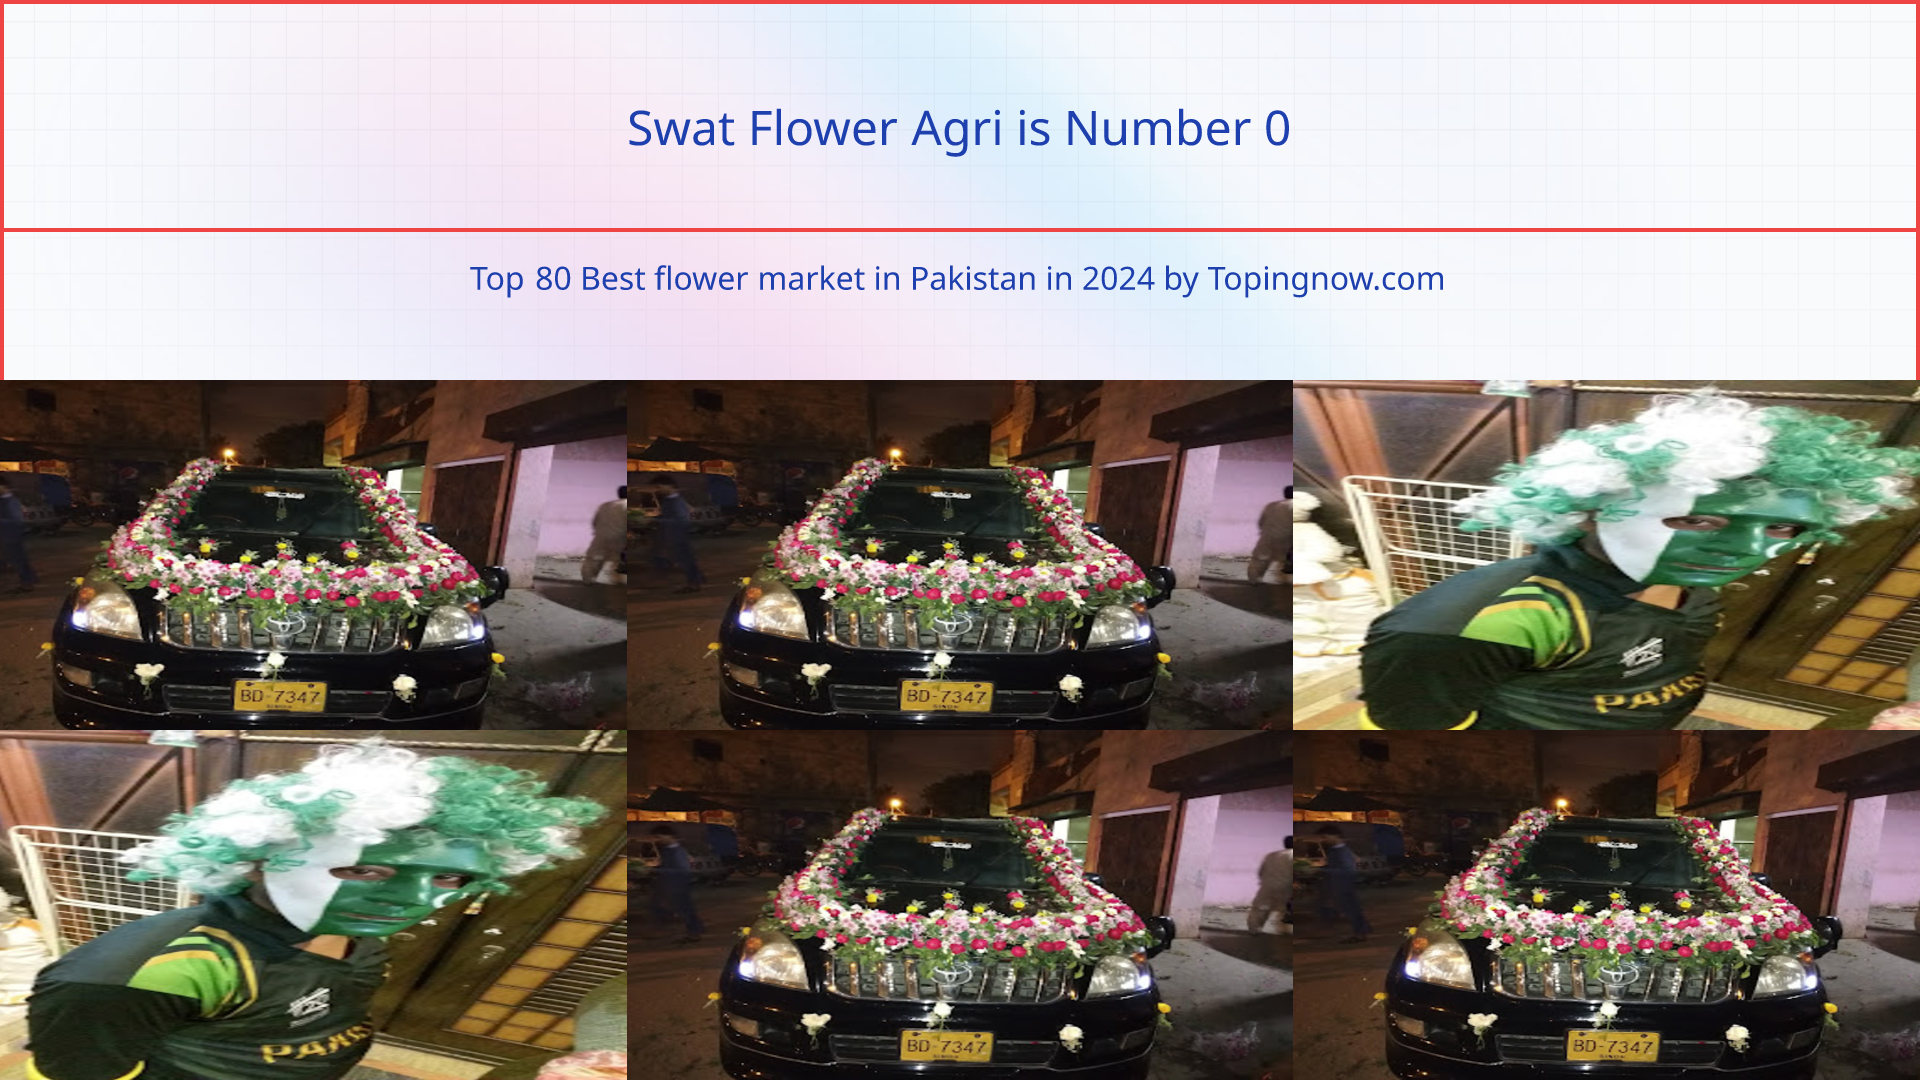 Swat Flower Agri: Top 80 Best flower market in Pakistan in 2024